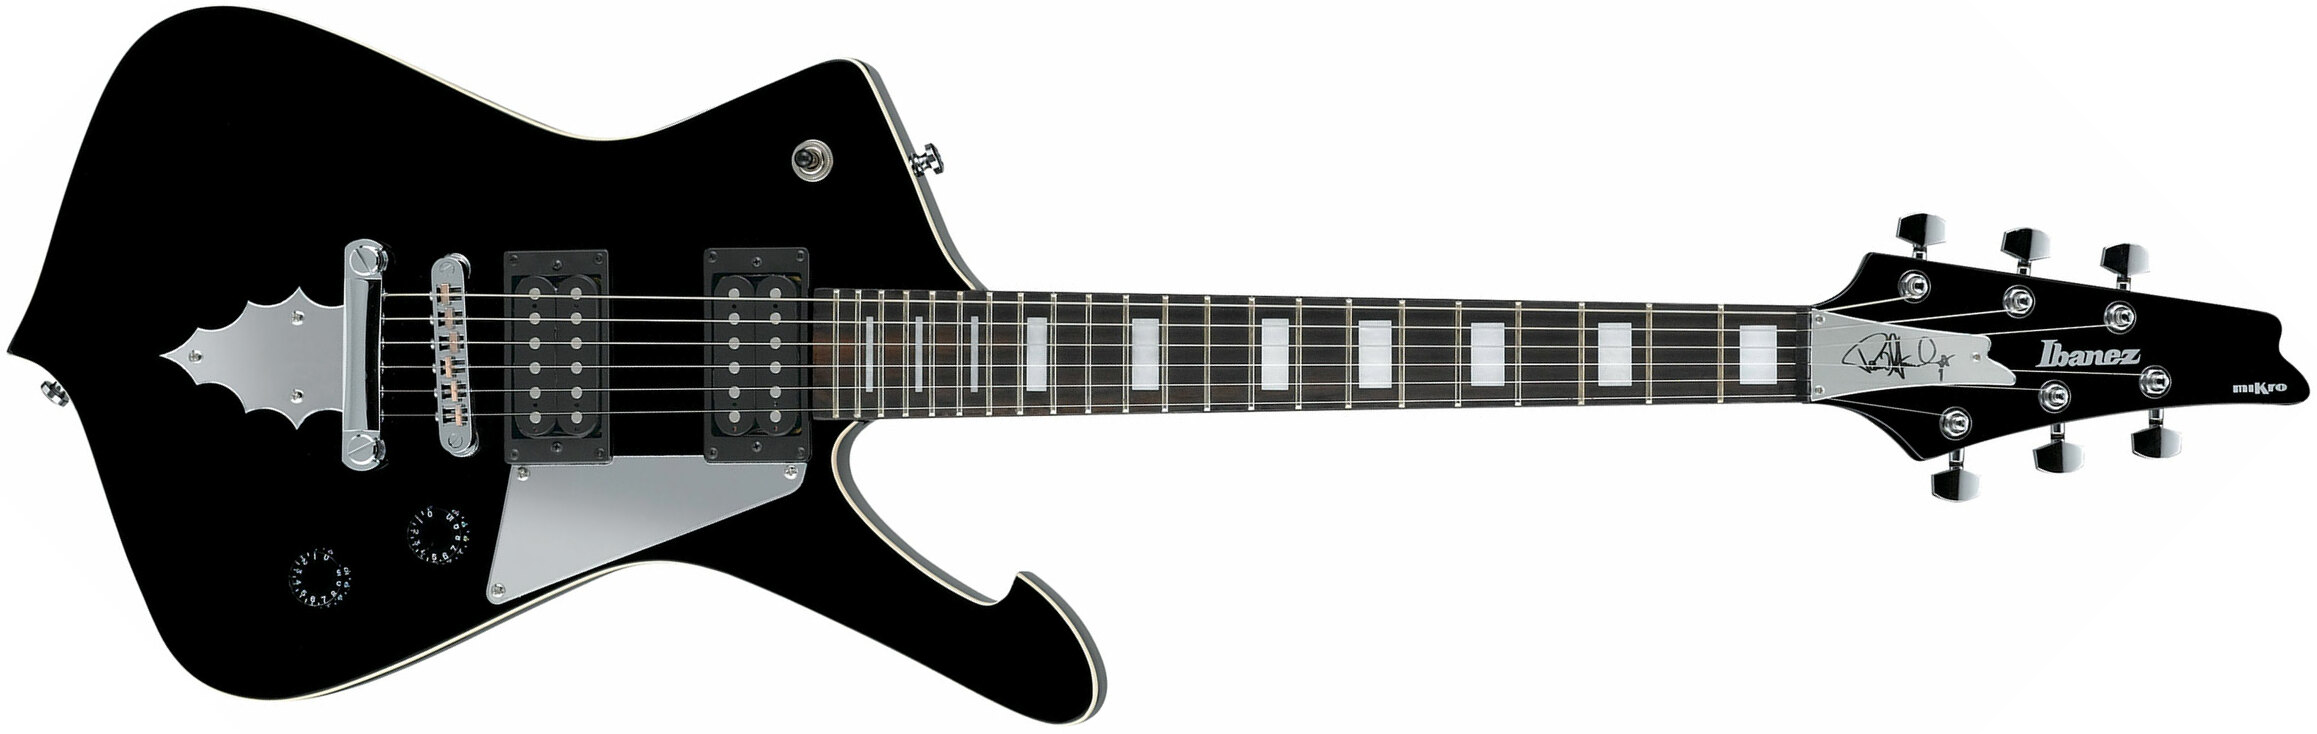 Ibanez Paul Stanley Psm10 Bk Signature Hh Ht Eb - Black - E-Gitarre für Kinder - Main picture